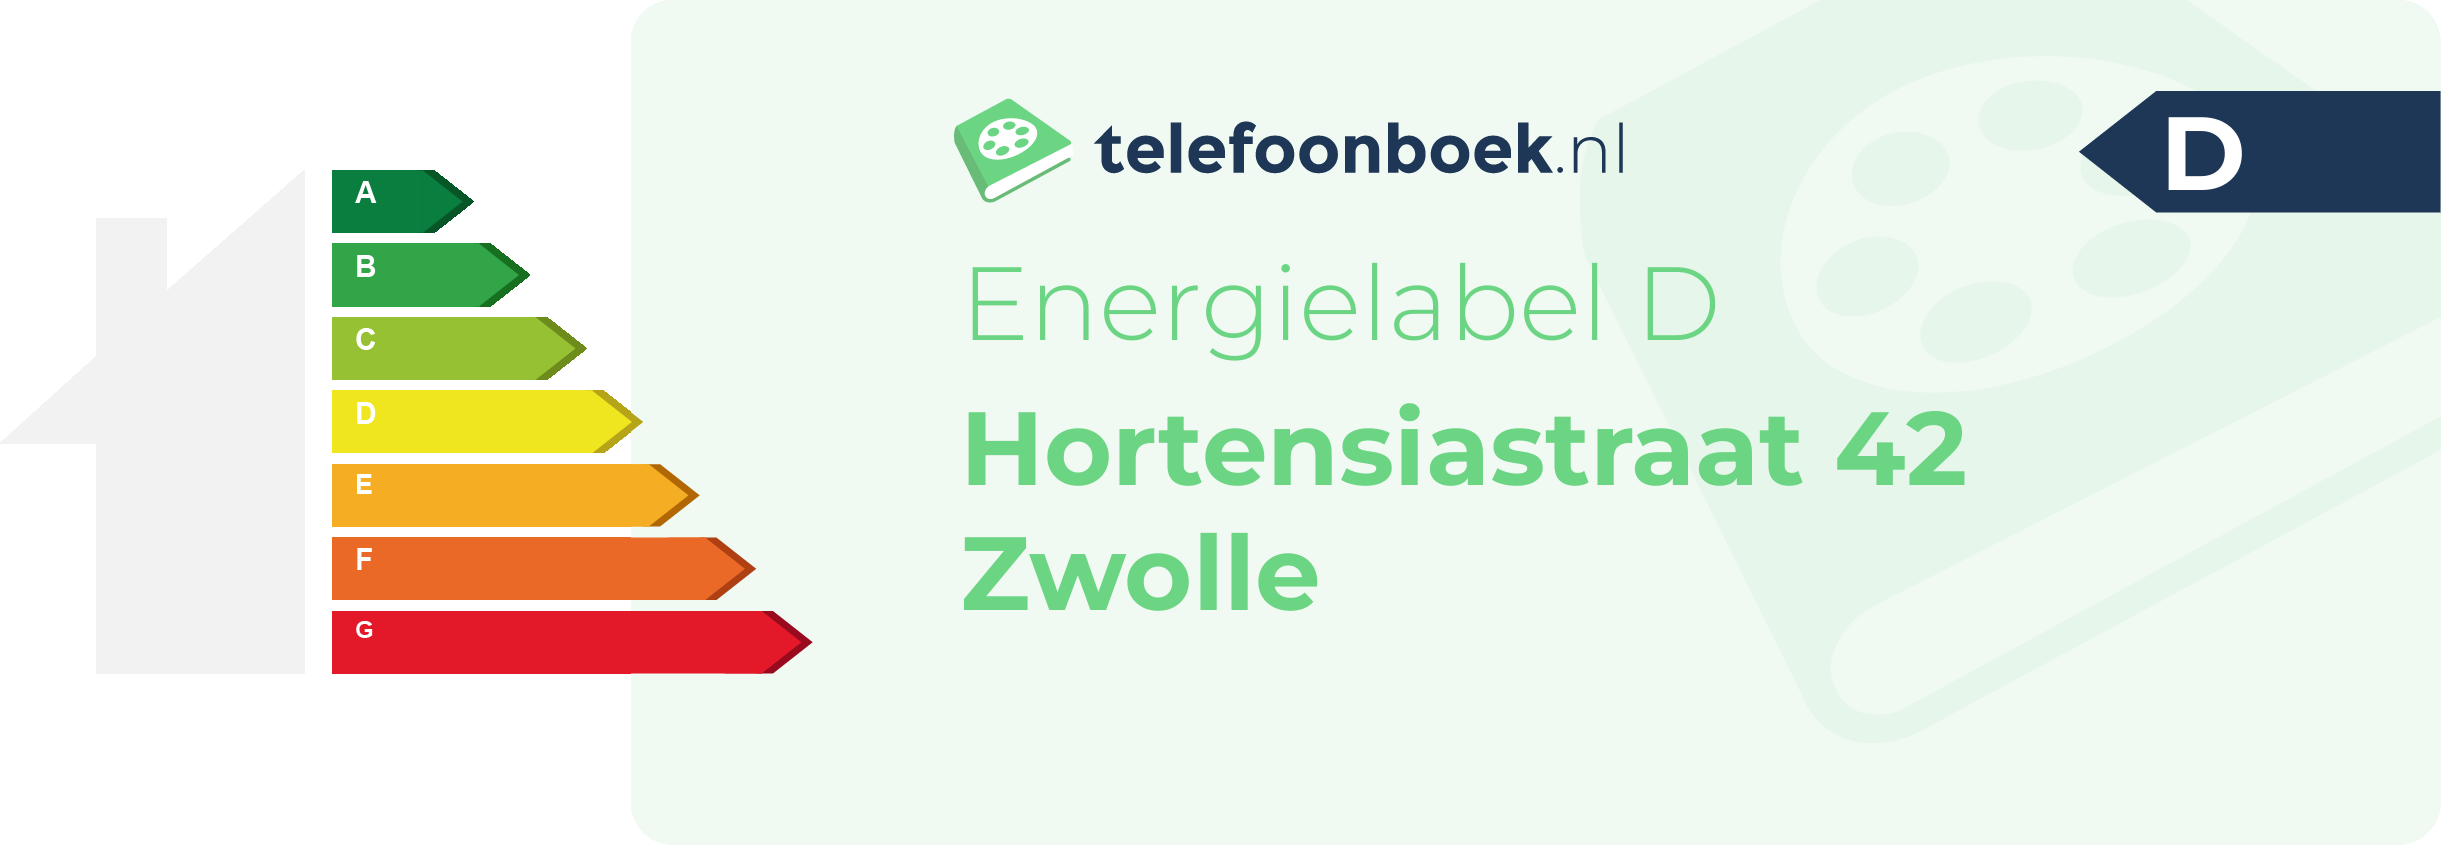 Energielabel Hortensiastraat 42 Zwolle